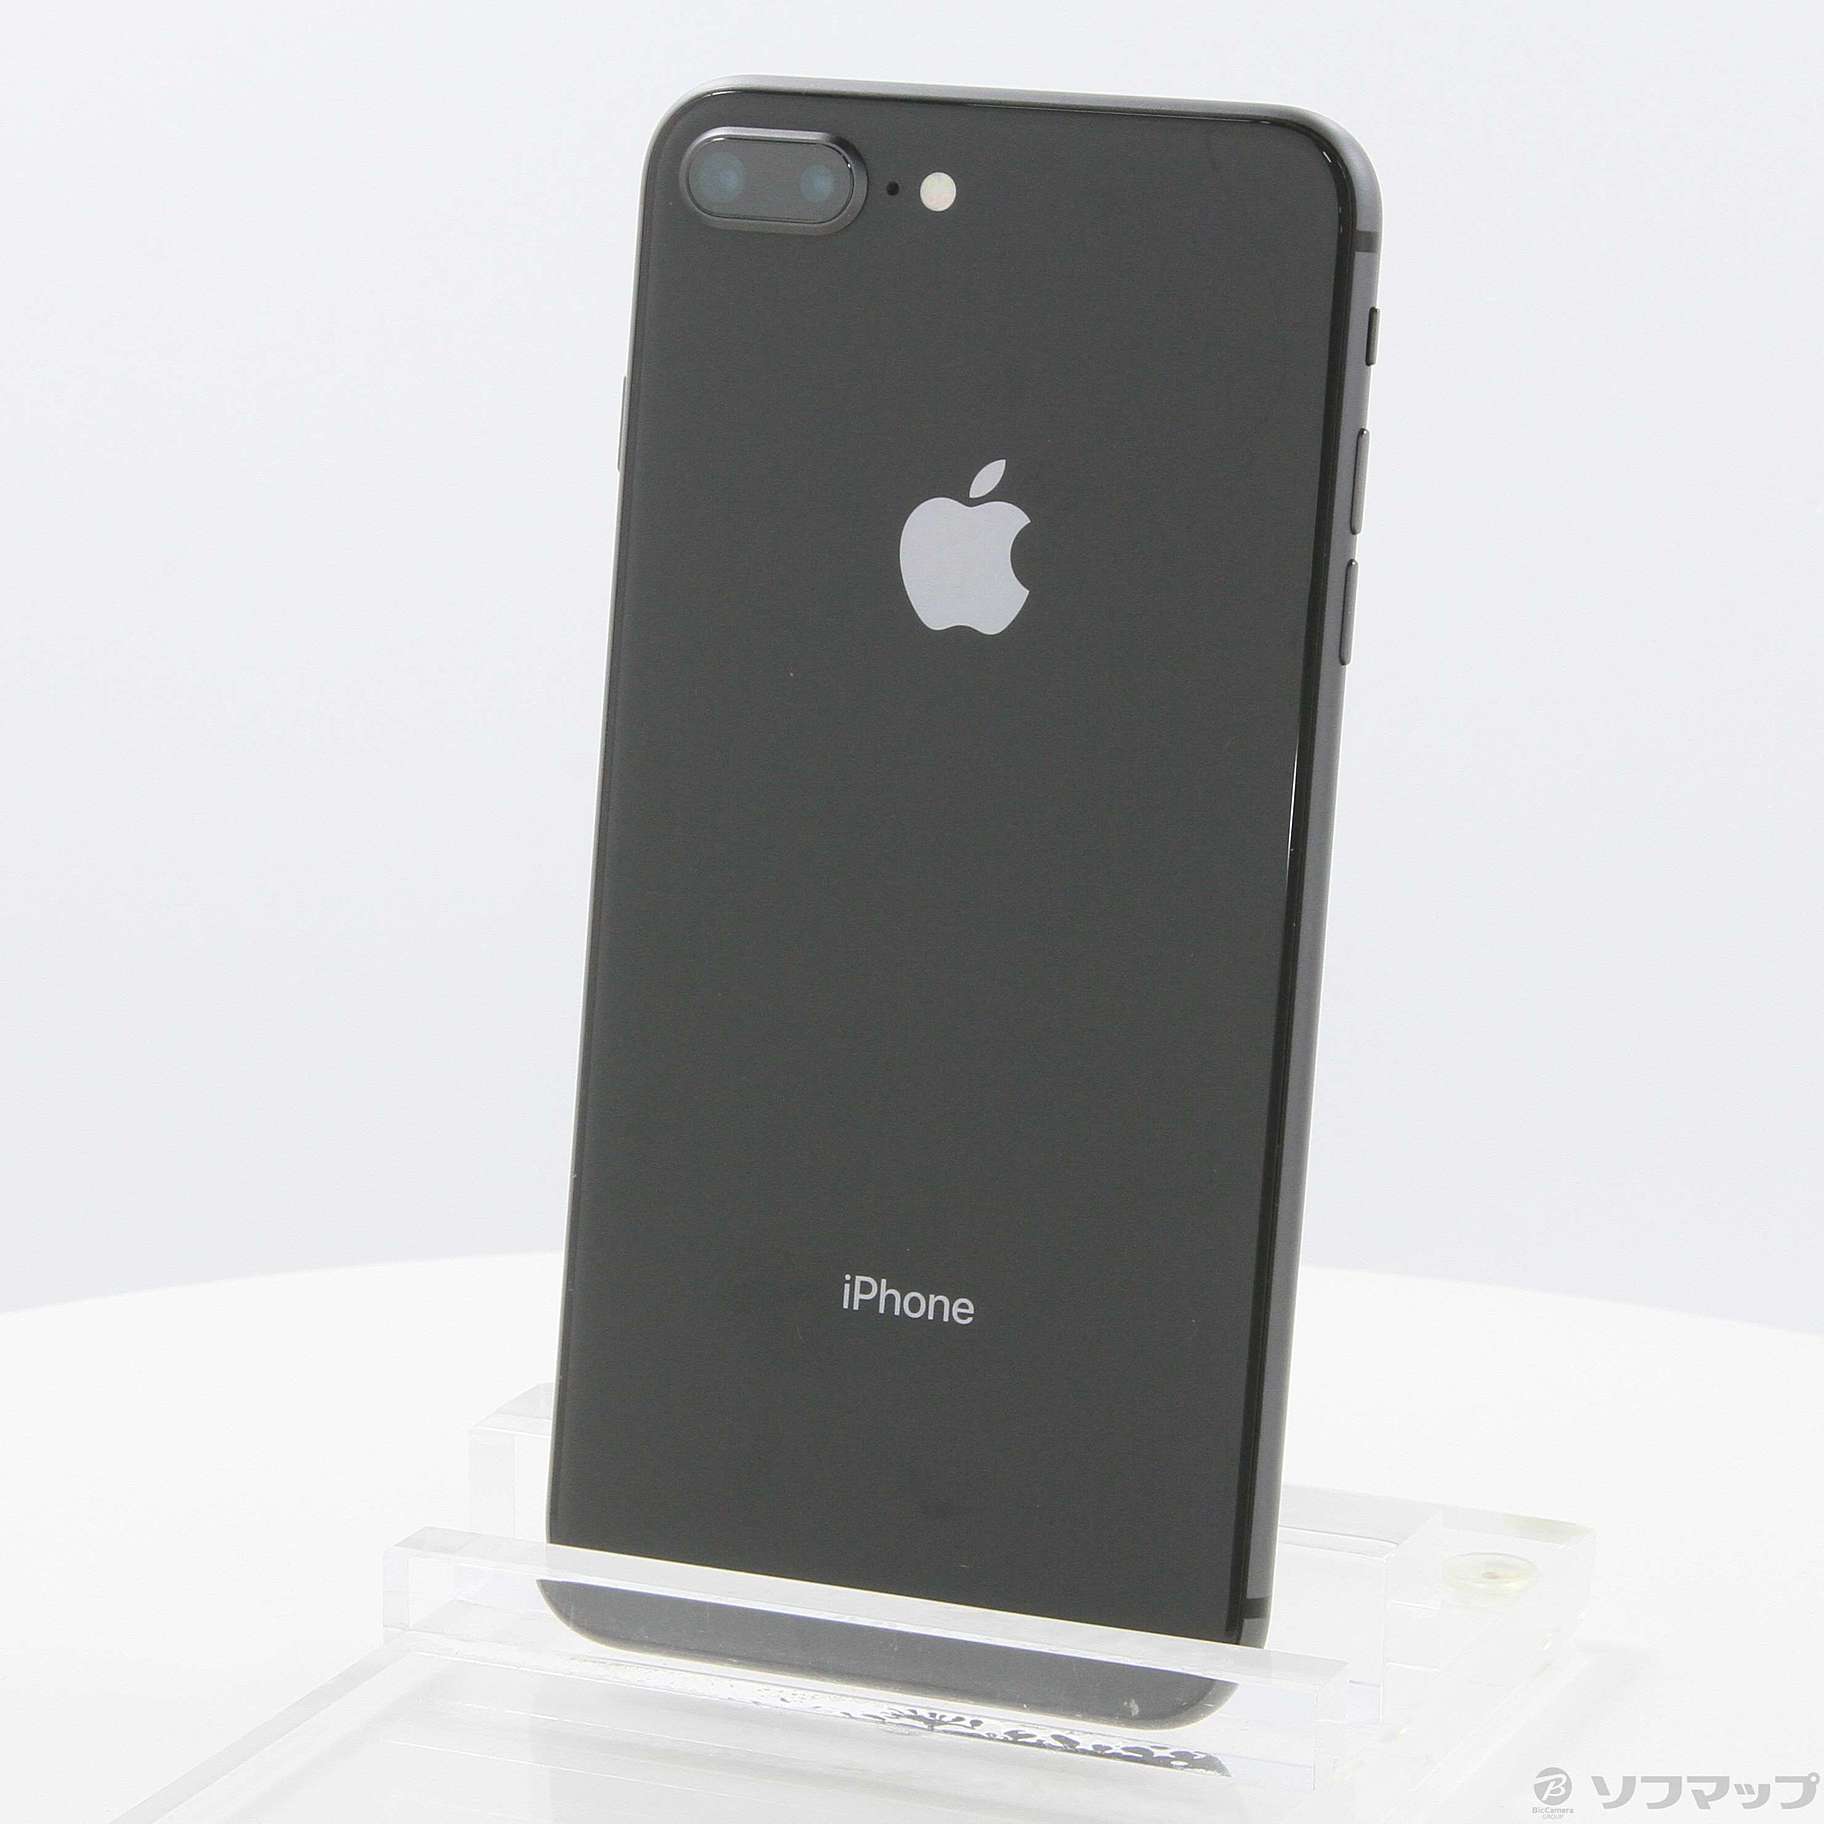 スマートフォン/携帯電話iPhone8 plus スペースグレー 64GB